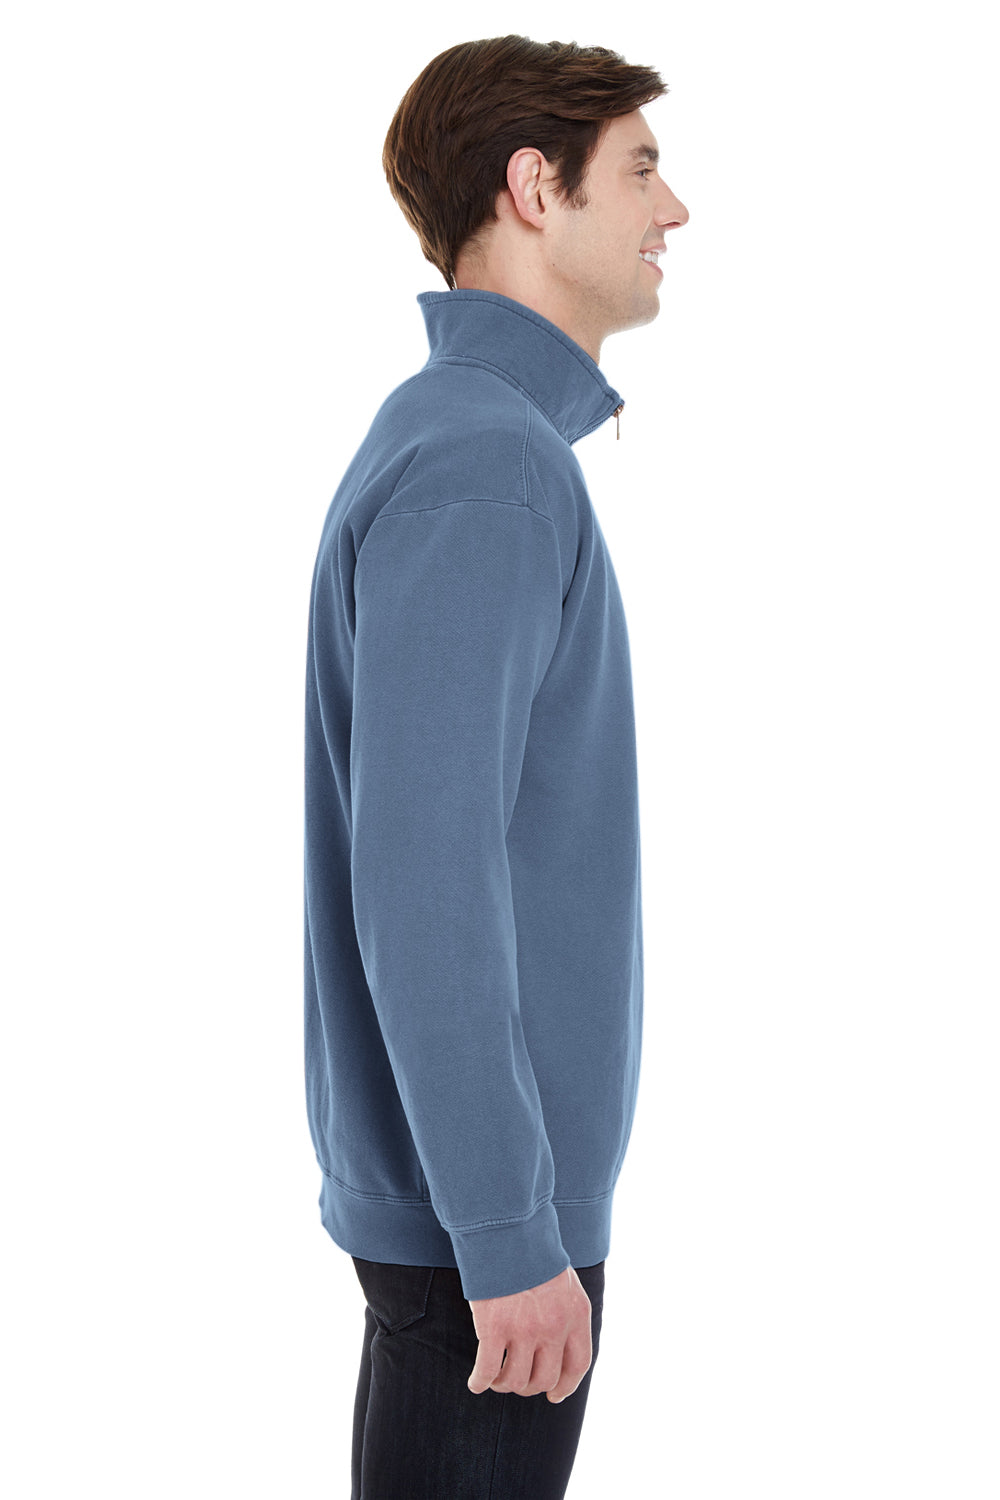 Comfort Colors 1580 Mens 1/4 Zip Sweatshirt Blue Jean Side